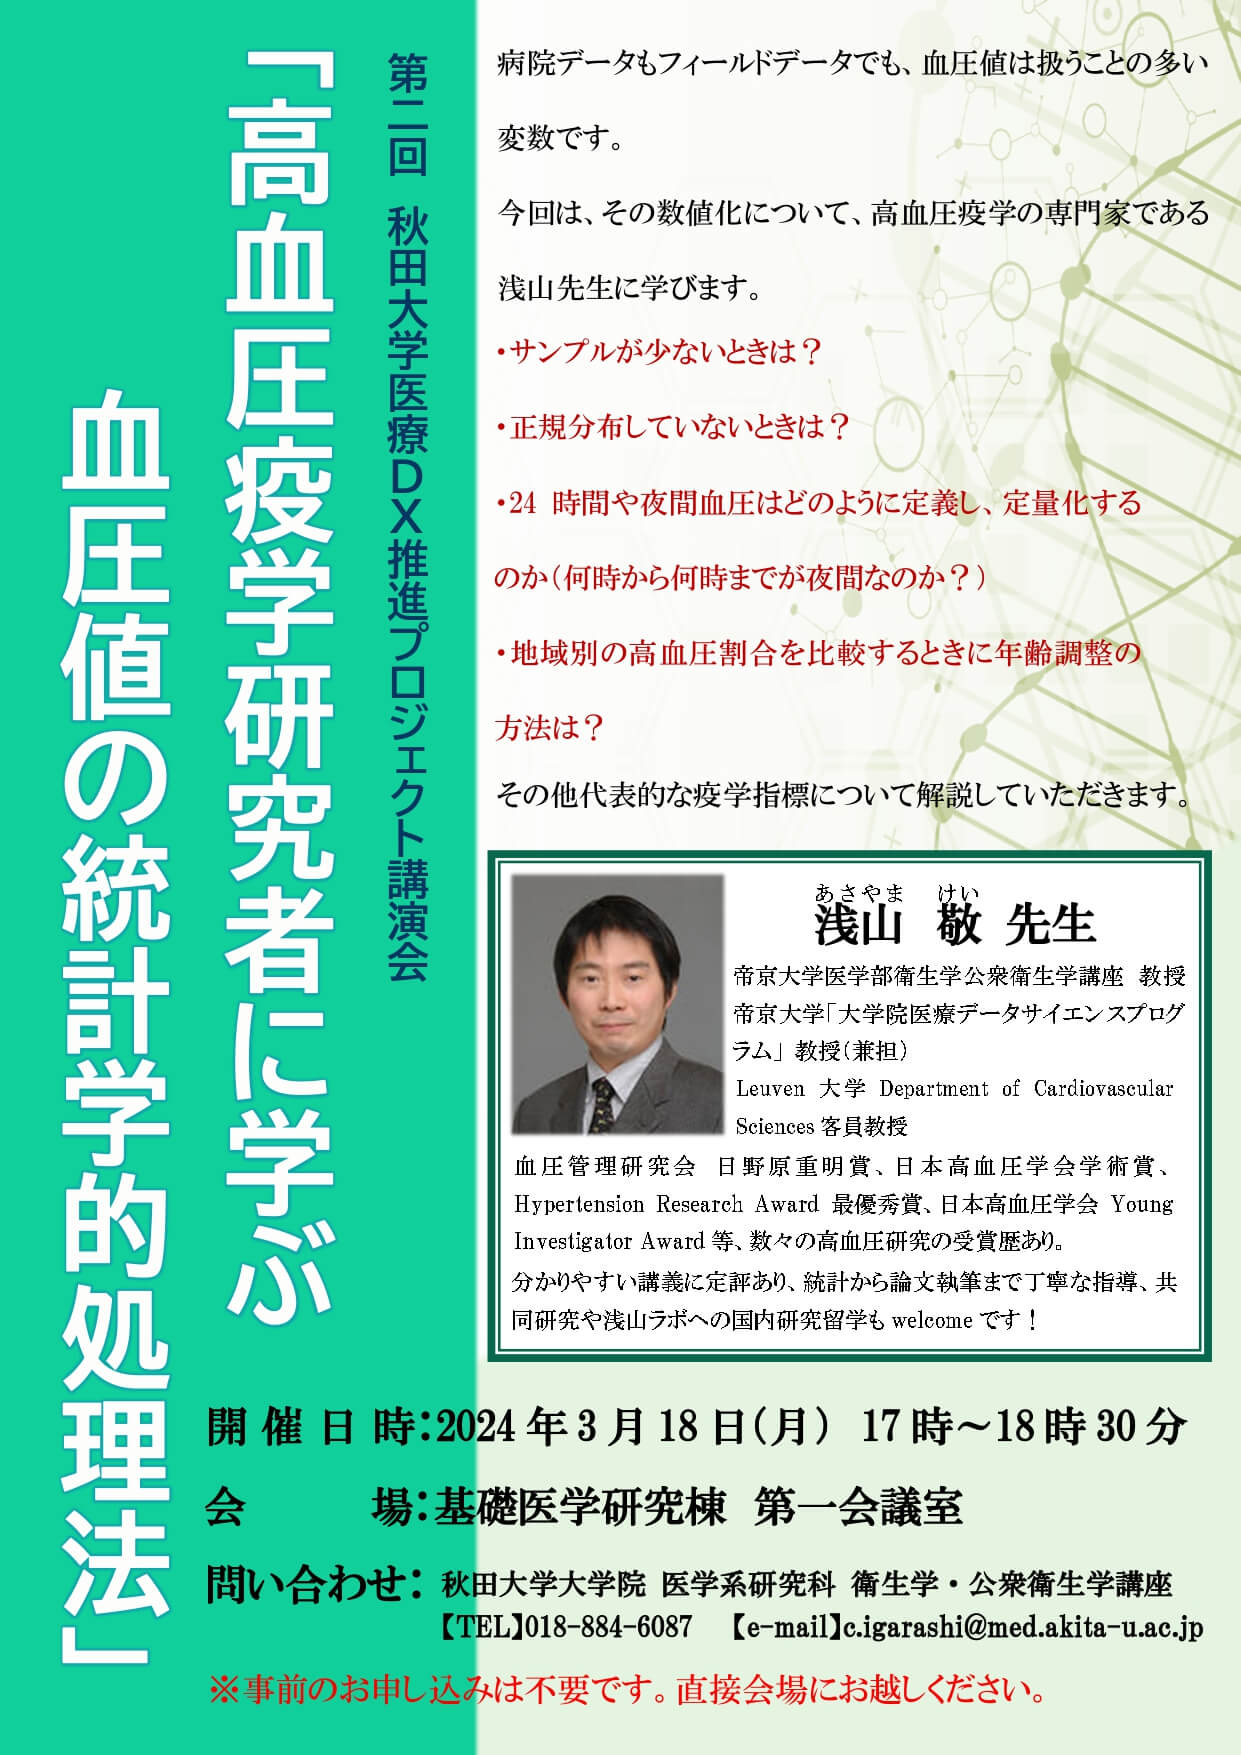 第2回 秋田大学医療DX推進プロジェクト講演会